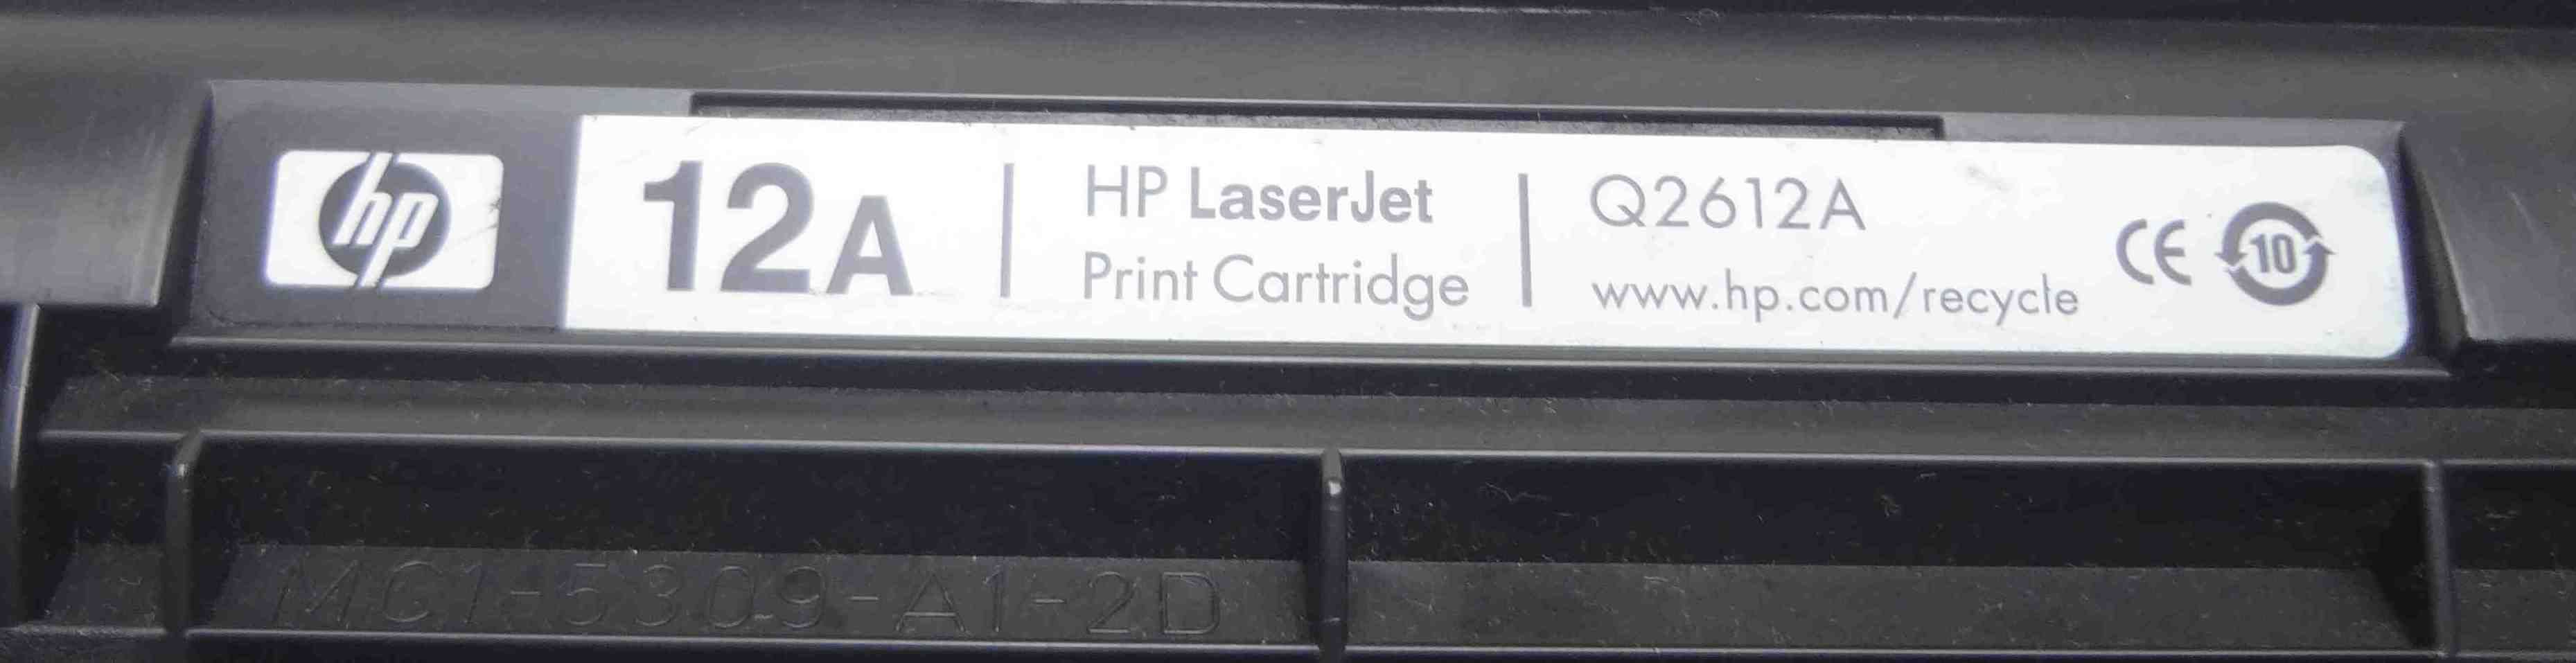 Оригинальный картридж для принтера HP LaserJet Q2612A 12A